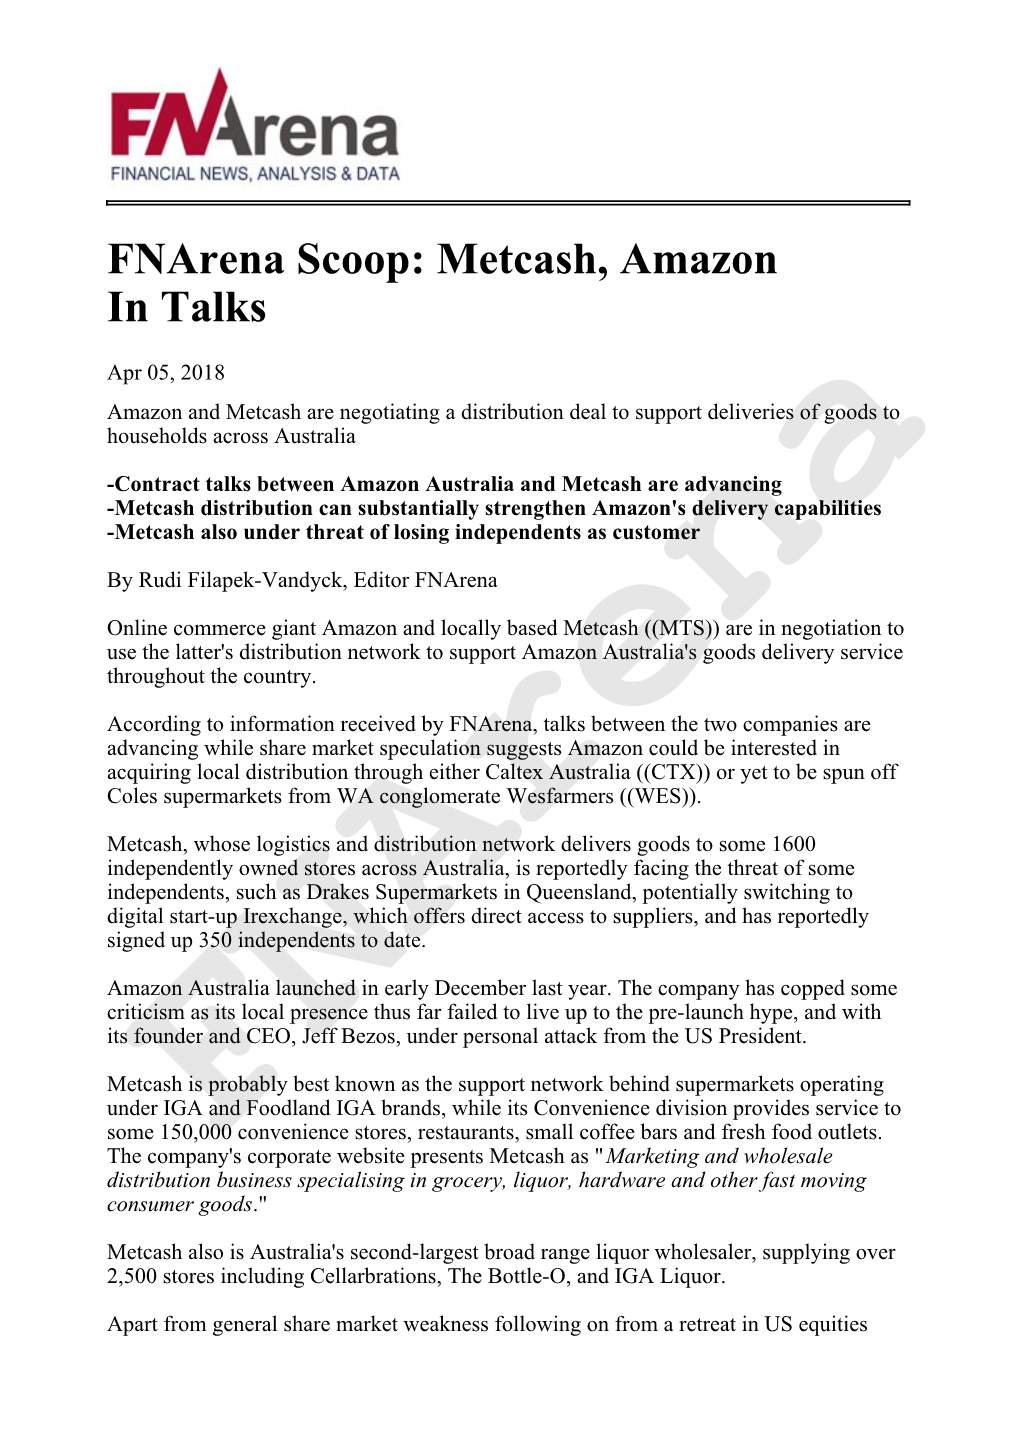 Fnarena Scoop: Metcash, Amazon in Talks